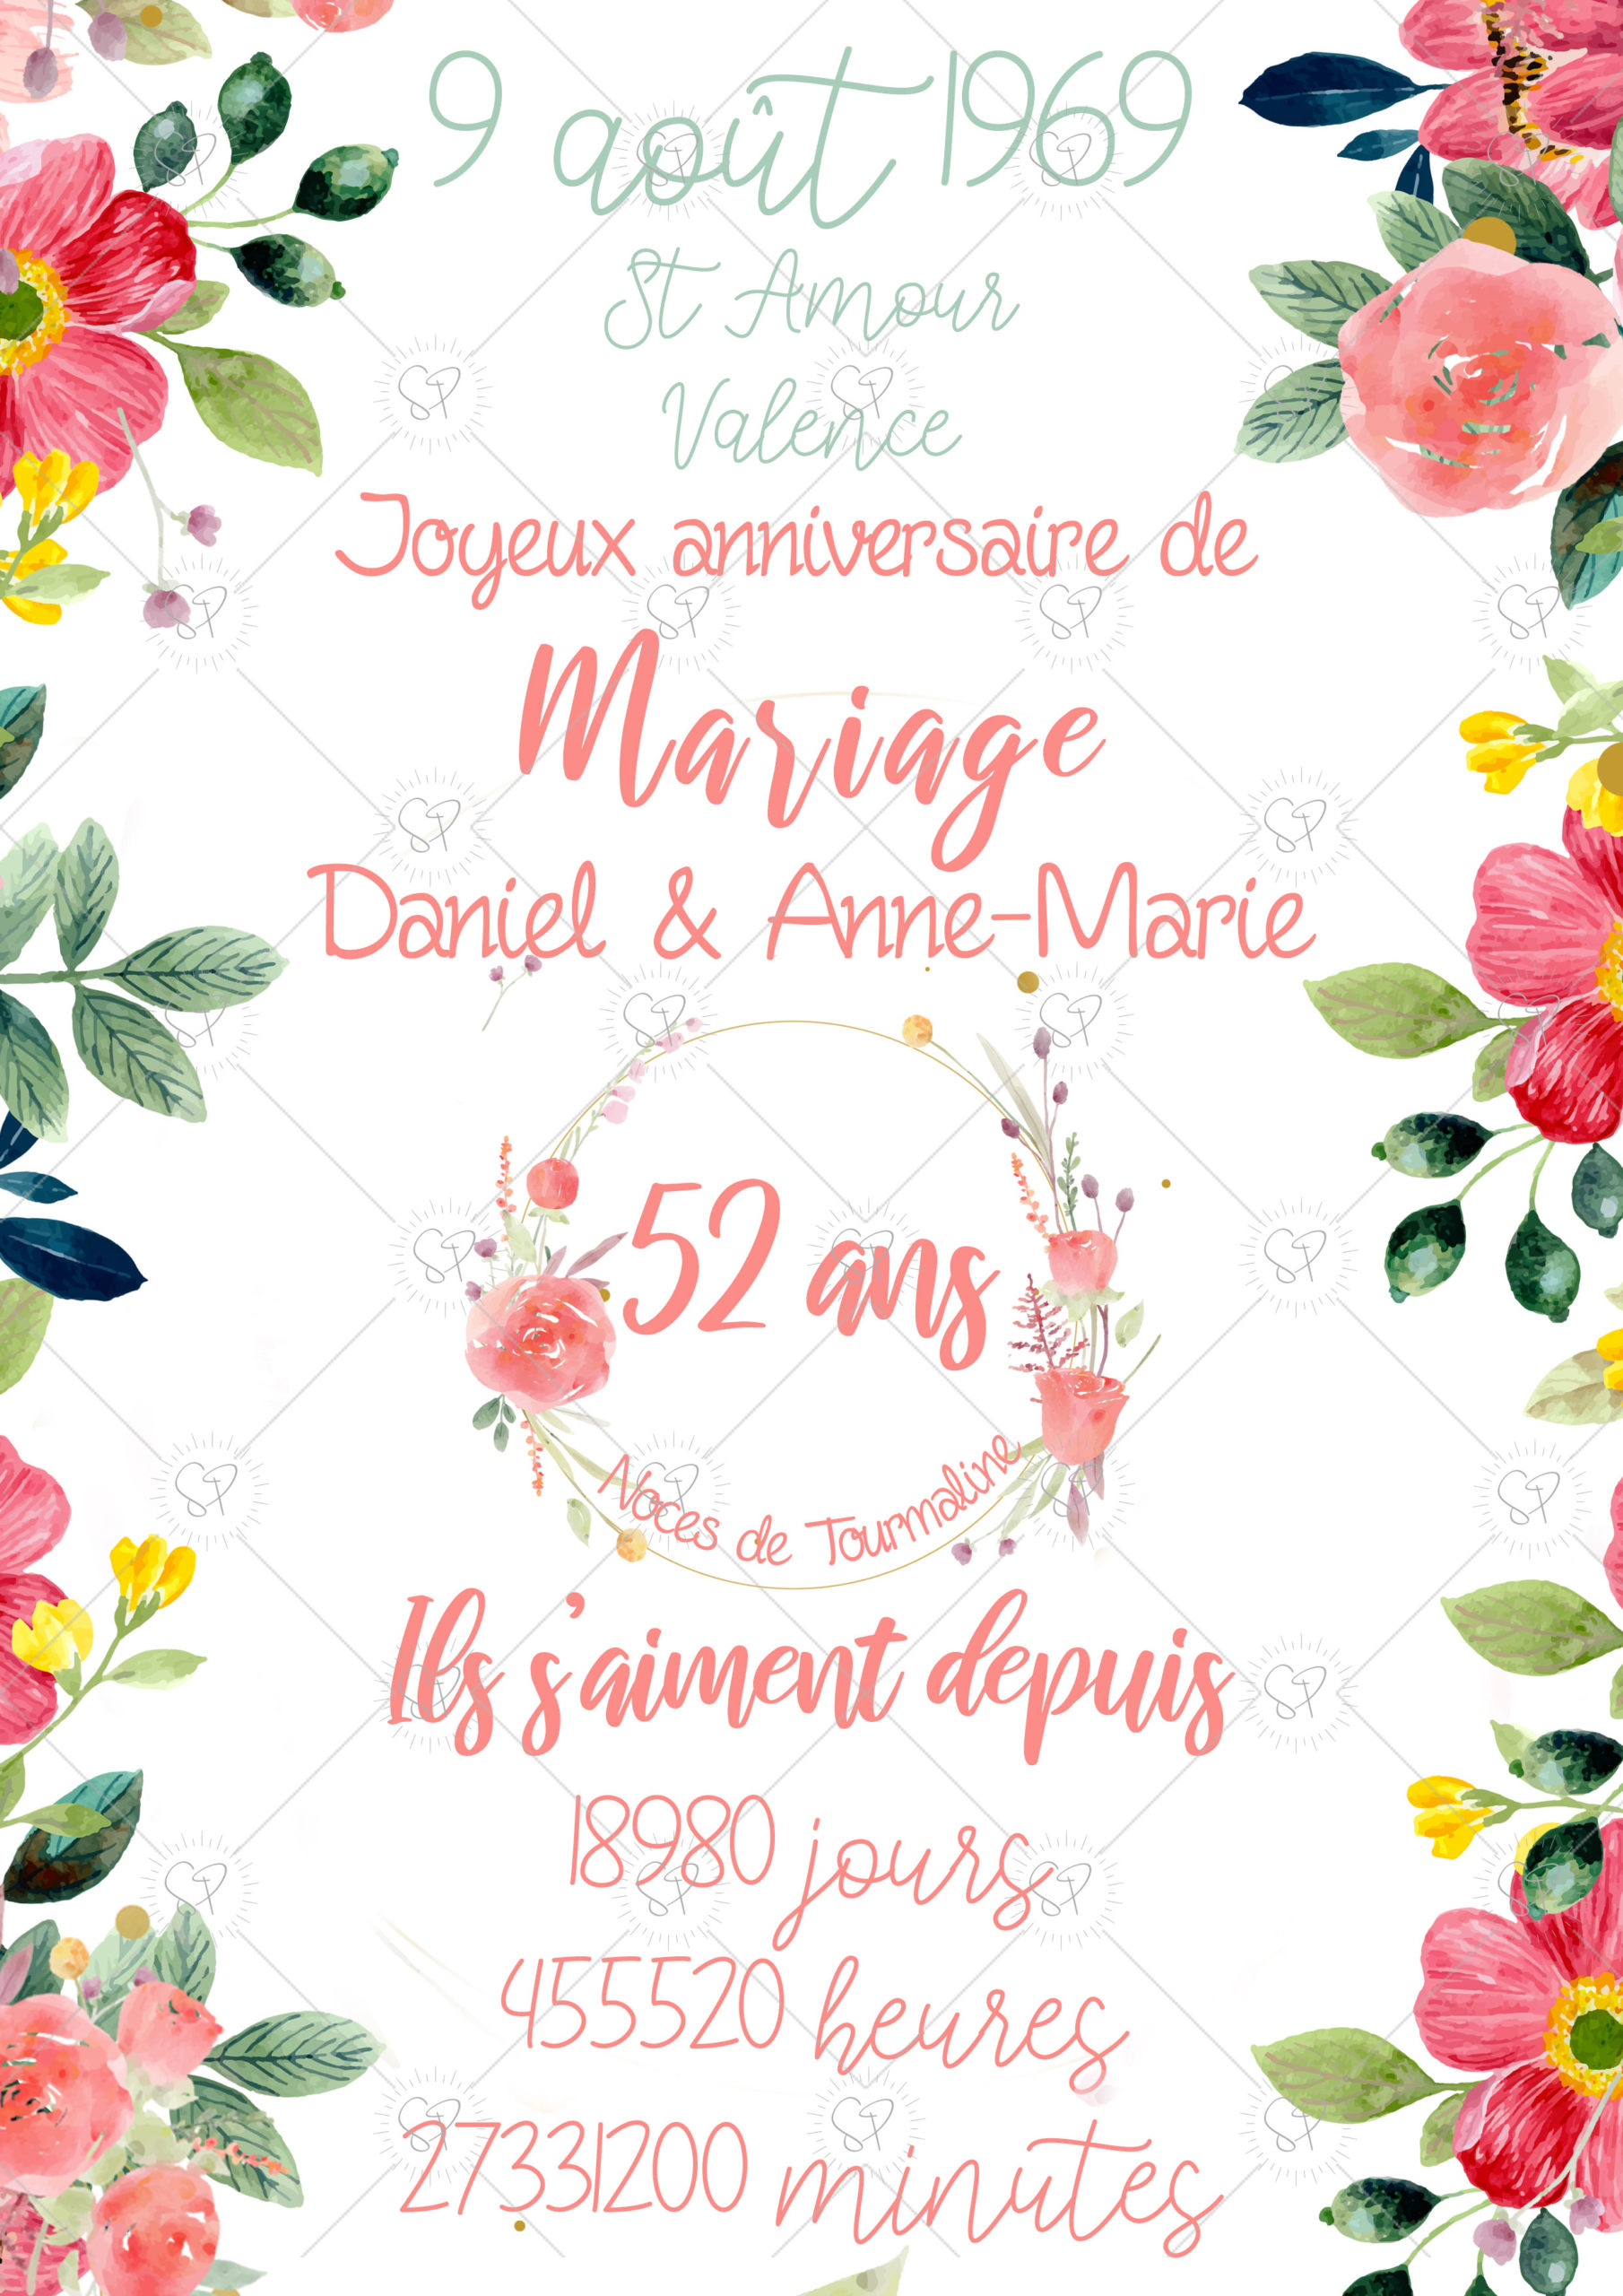 Affiche mariage avec la possibilité d'afficher le nombre de jours, heures et minutes